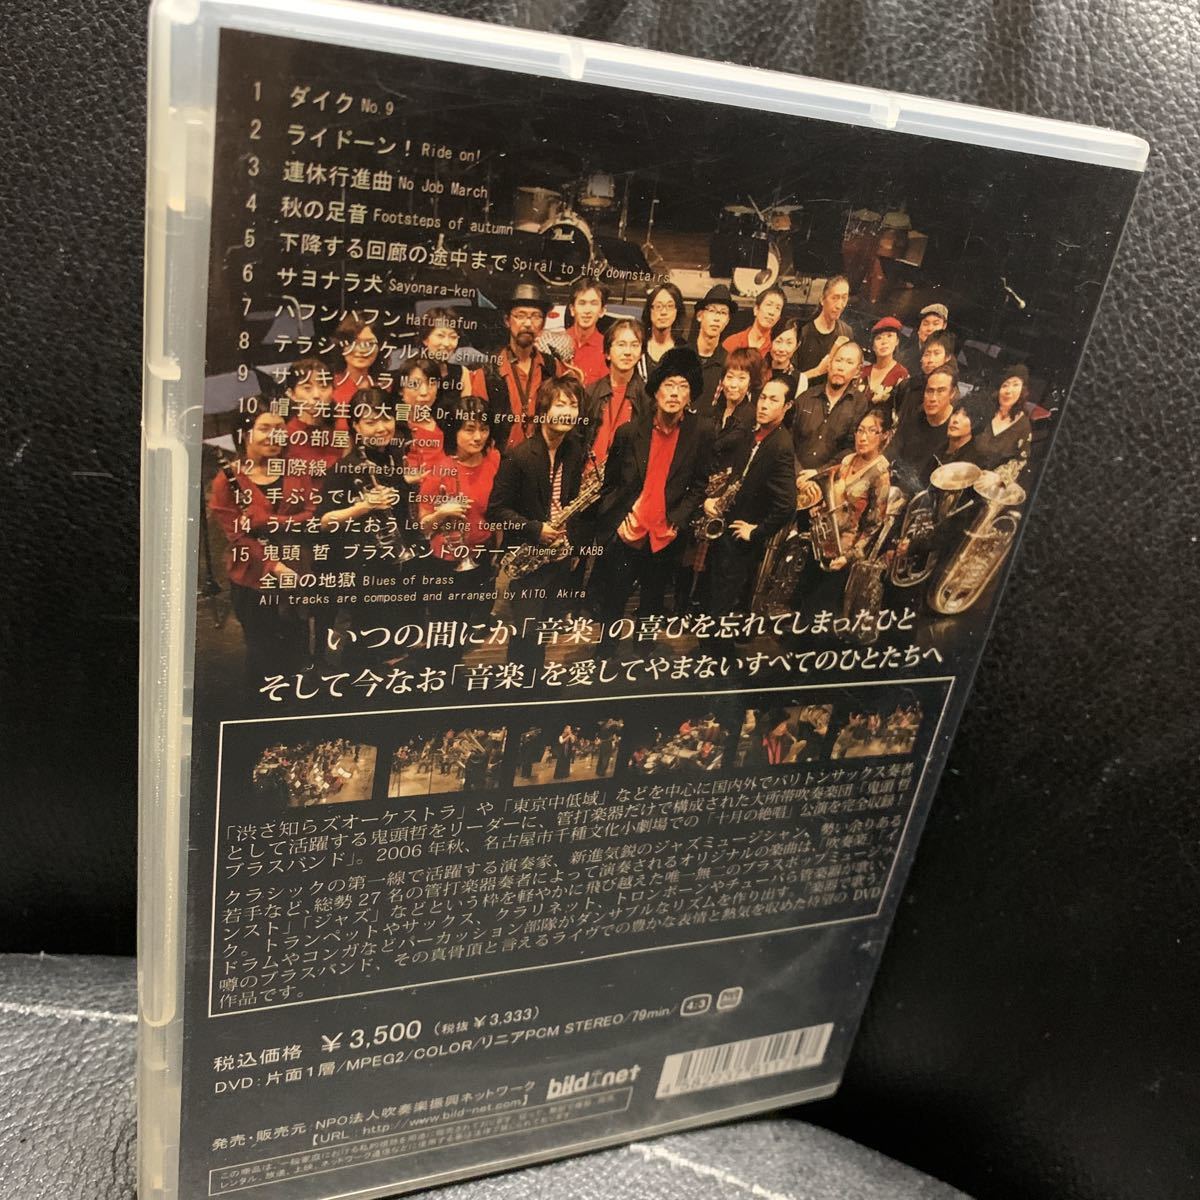 鬼頭哲ブラスバンドの 十月の絶唱 KITO,Akira Brass Band! DVD_画像2